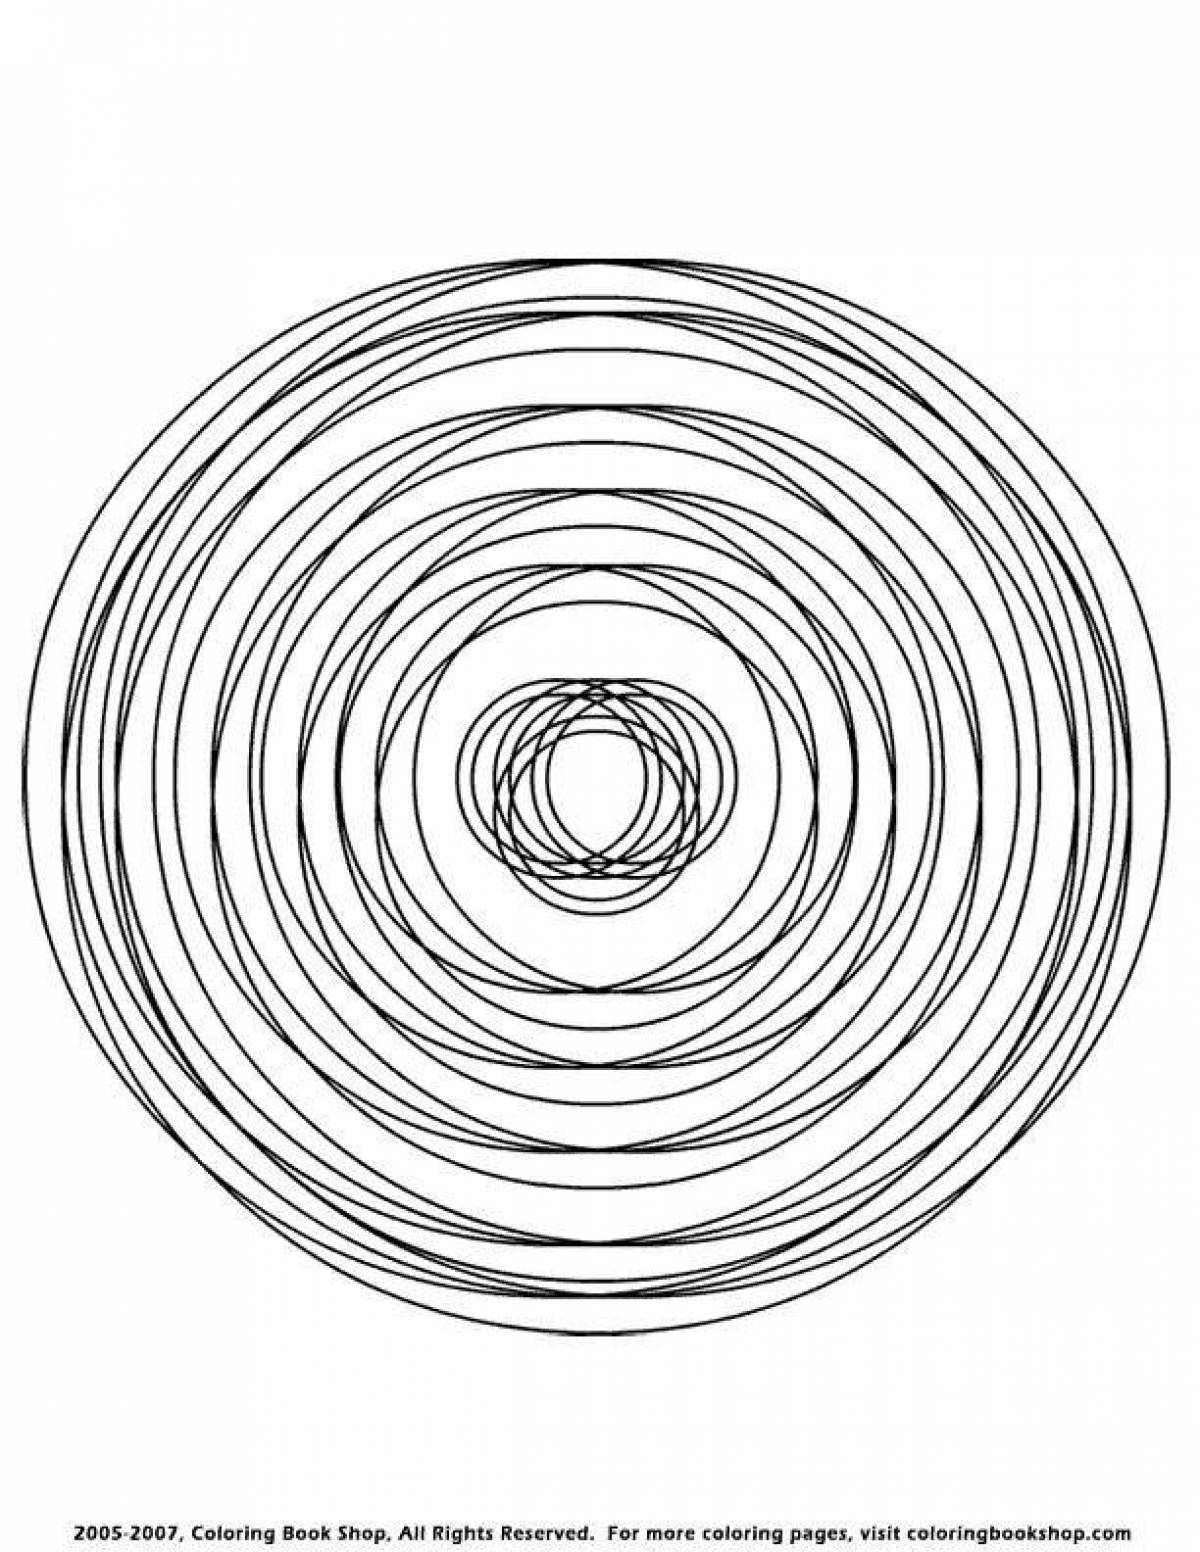 Страница раскраски сложной круговой спирали